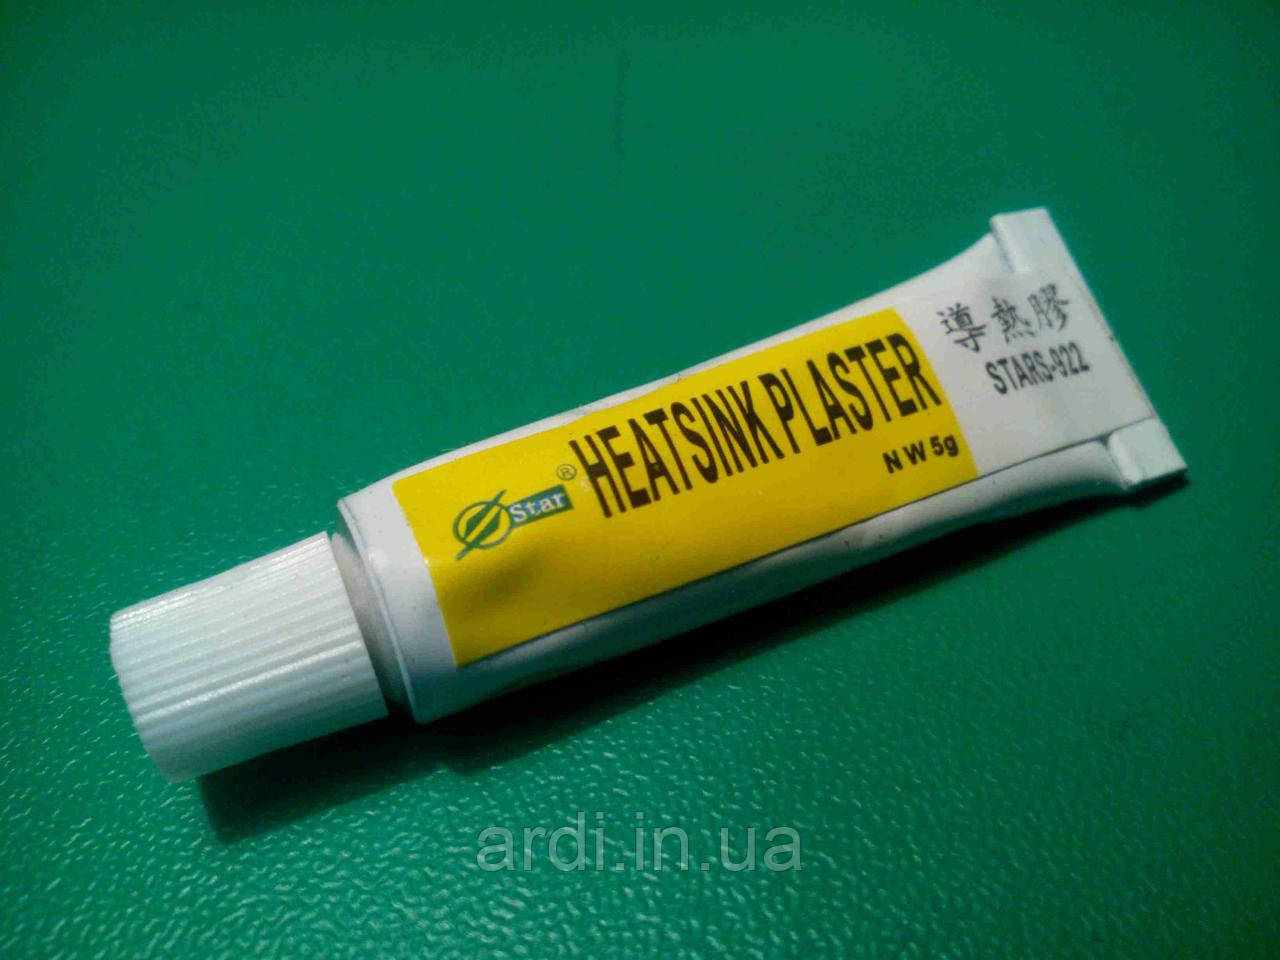 Теплопровідний клей Heatsink Plaster Stars-922 5 гр